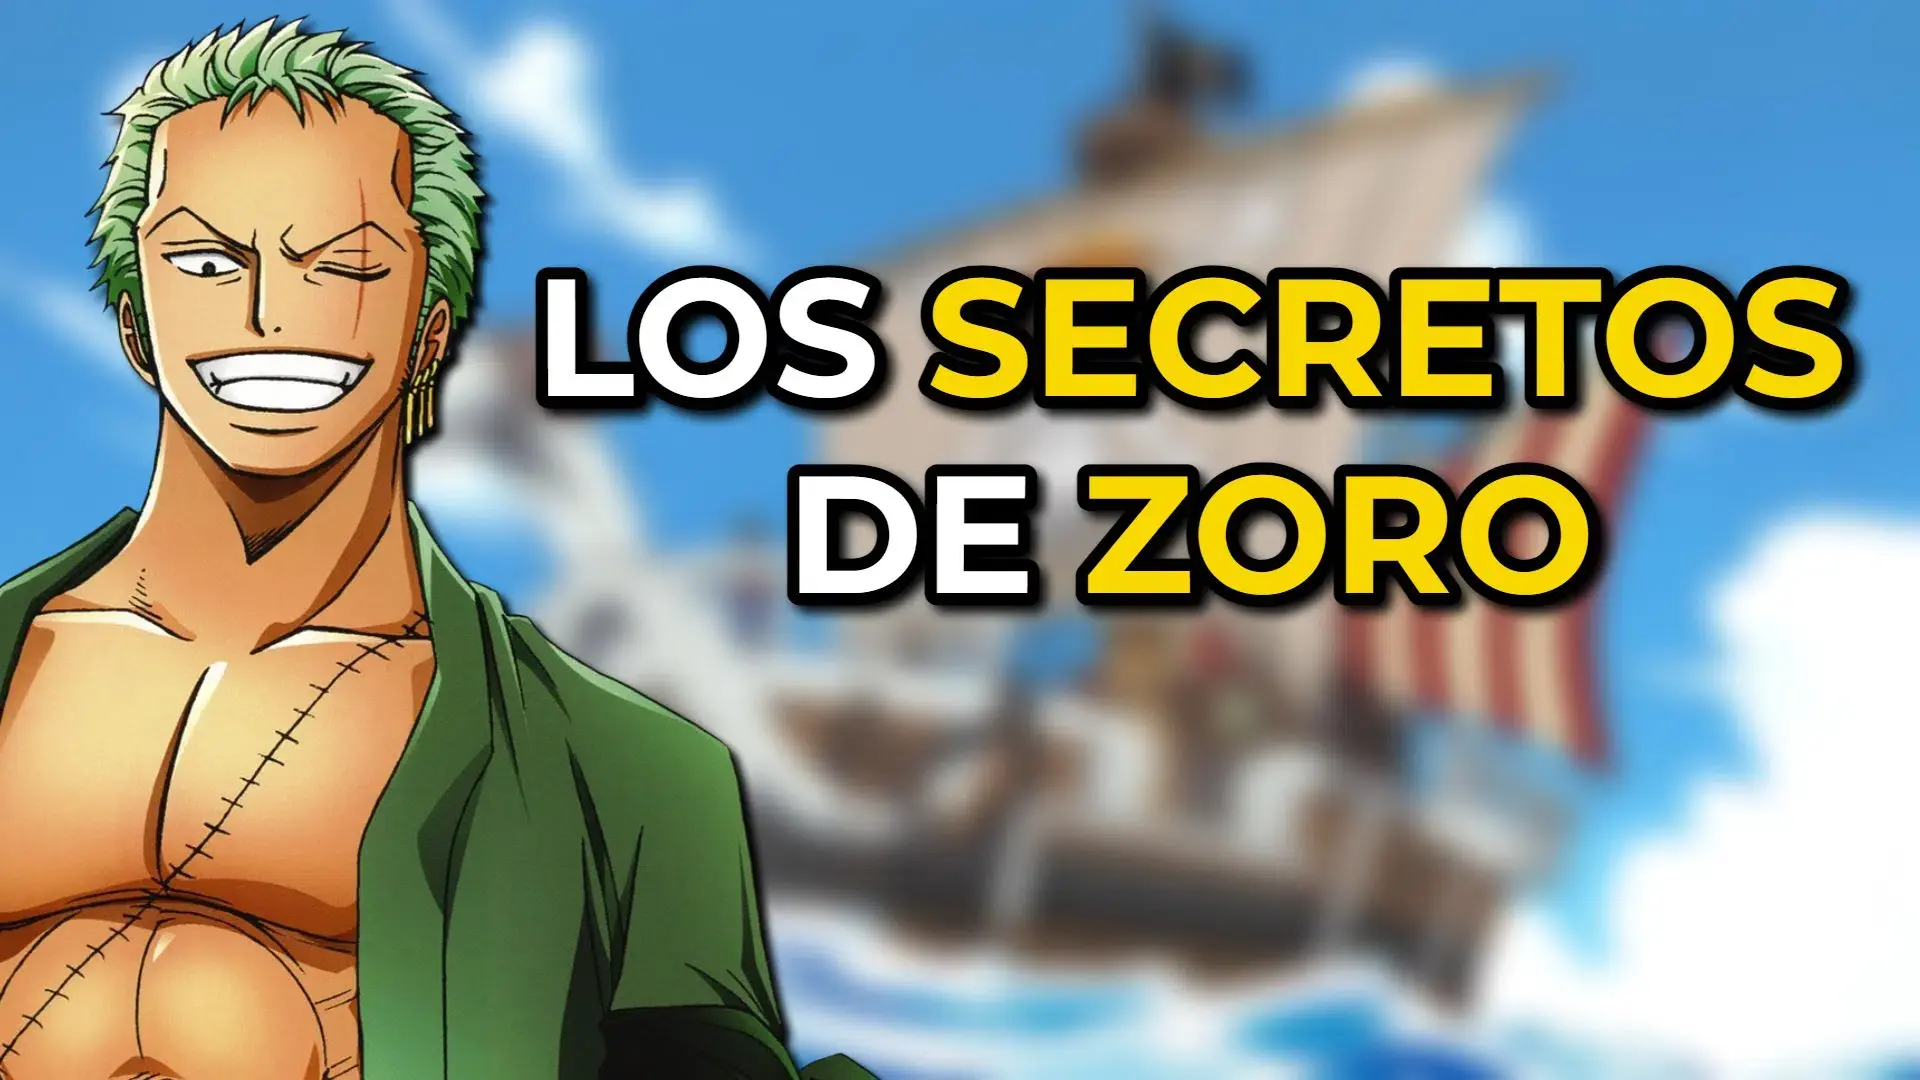 Estas são 5 curiosidades sobre Zoro em One Piece que você